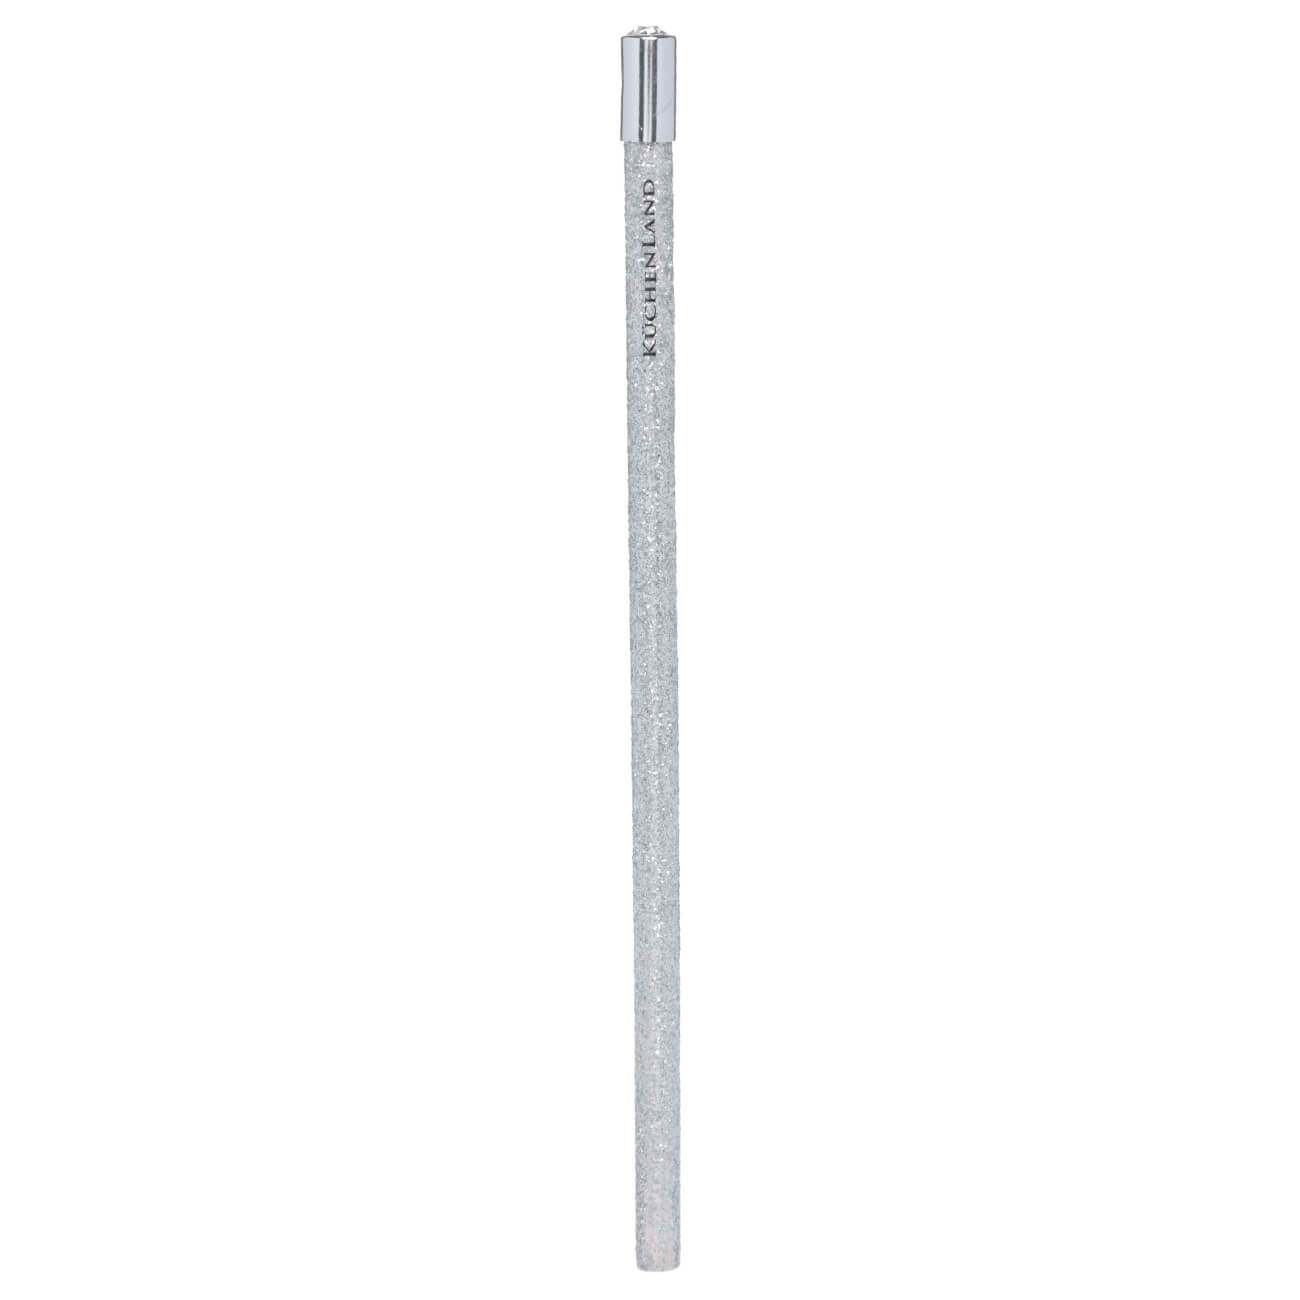 Карандаш, 18 см, чернографитный, серебристый, Draw sparcle чернографитный карандаш hatber